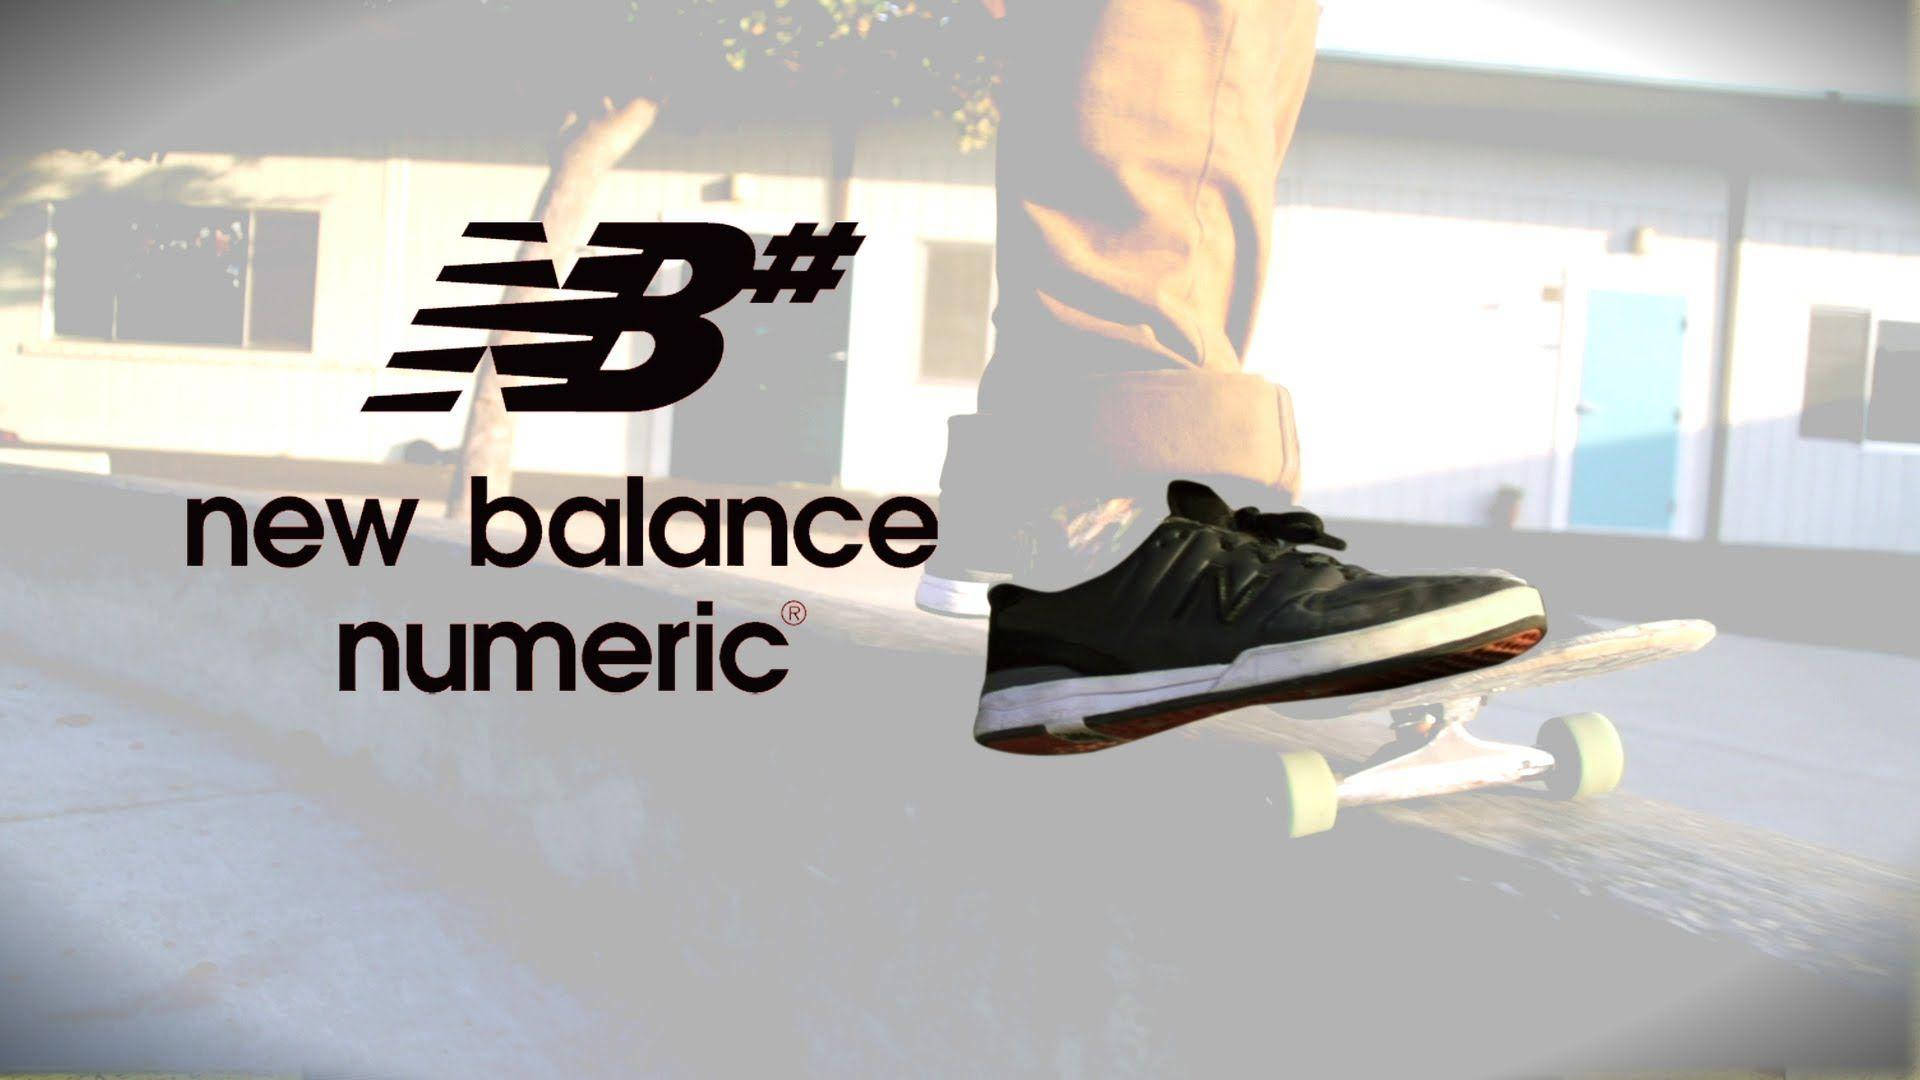 Títulozapatillas De Skateboard New Balance Numeric Negras Fondo de pantalla